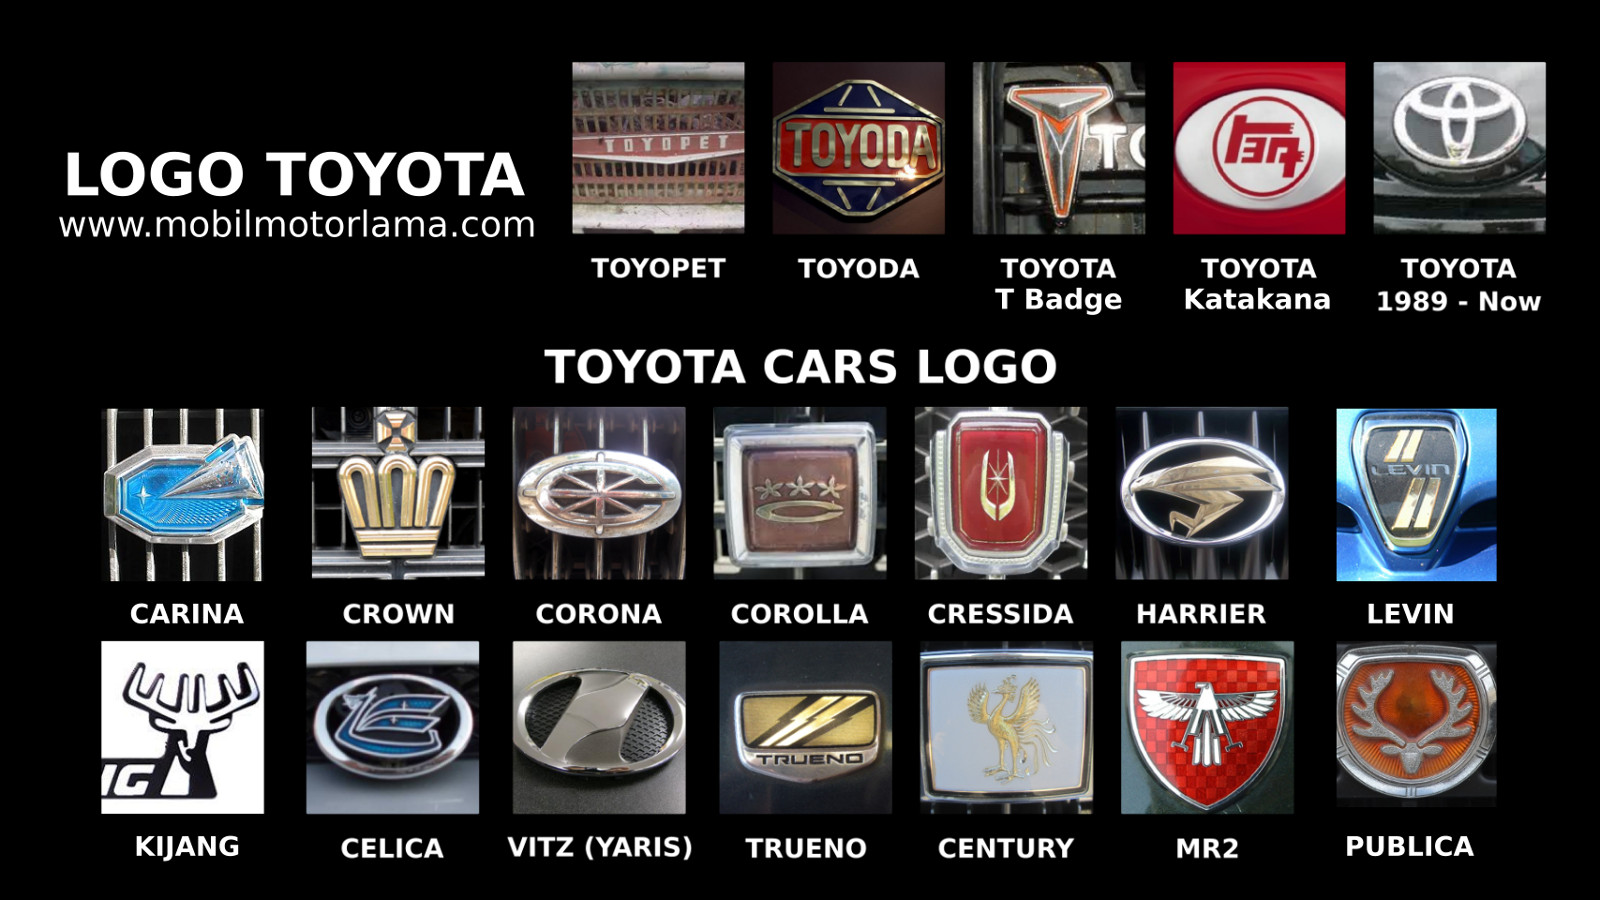 Mengenal Berbagai Macam Logo Mobil Toyota Mobil Motor Lama